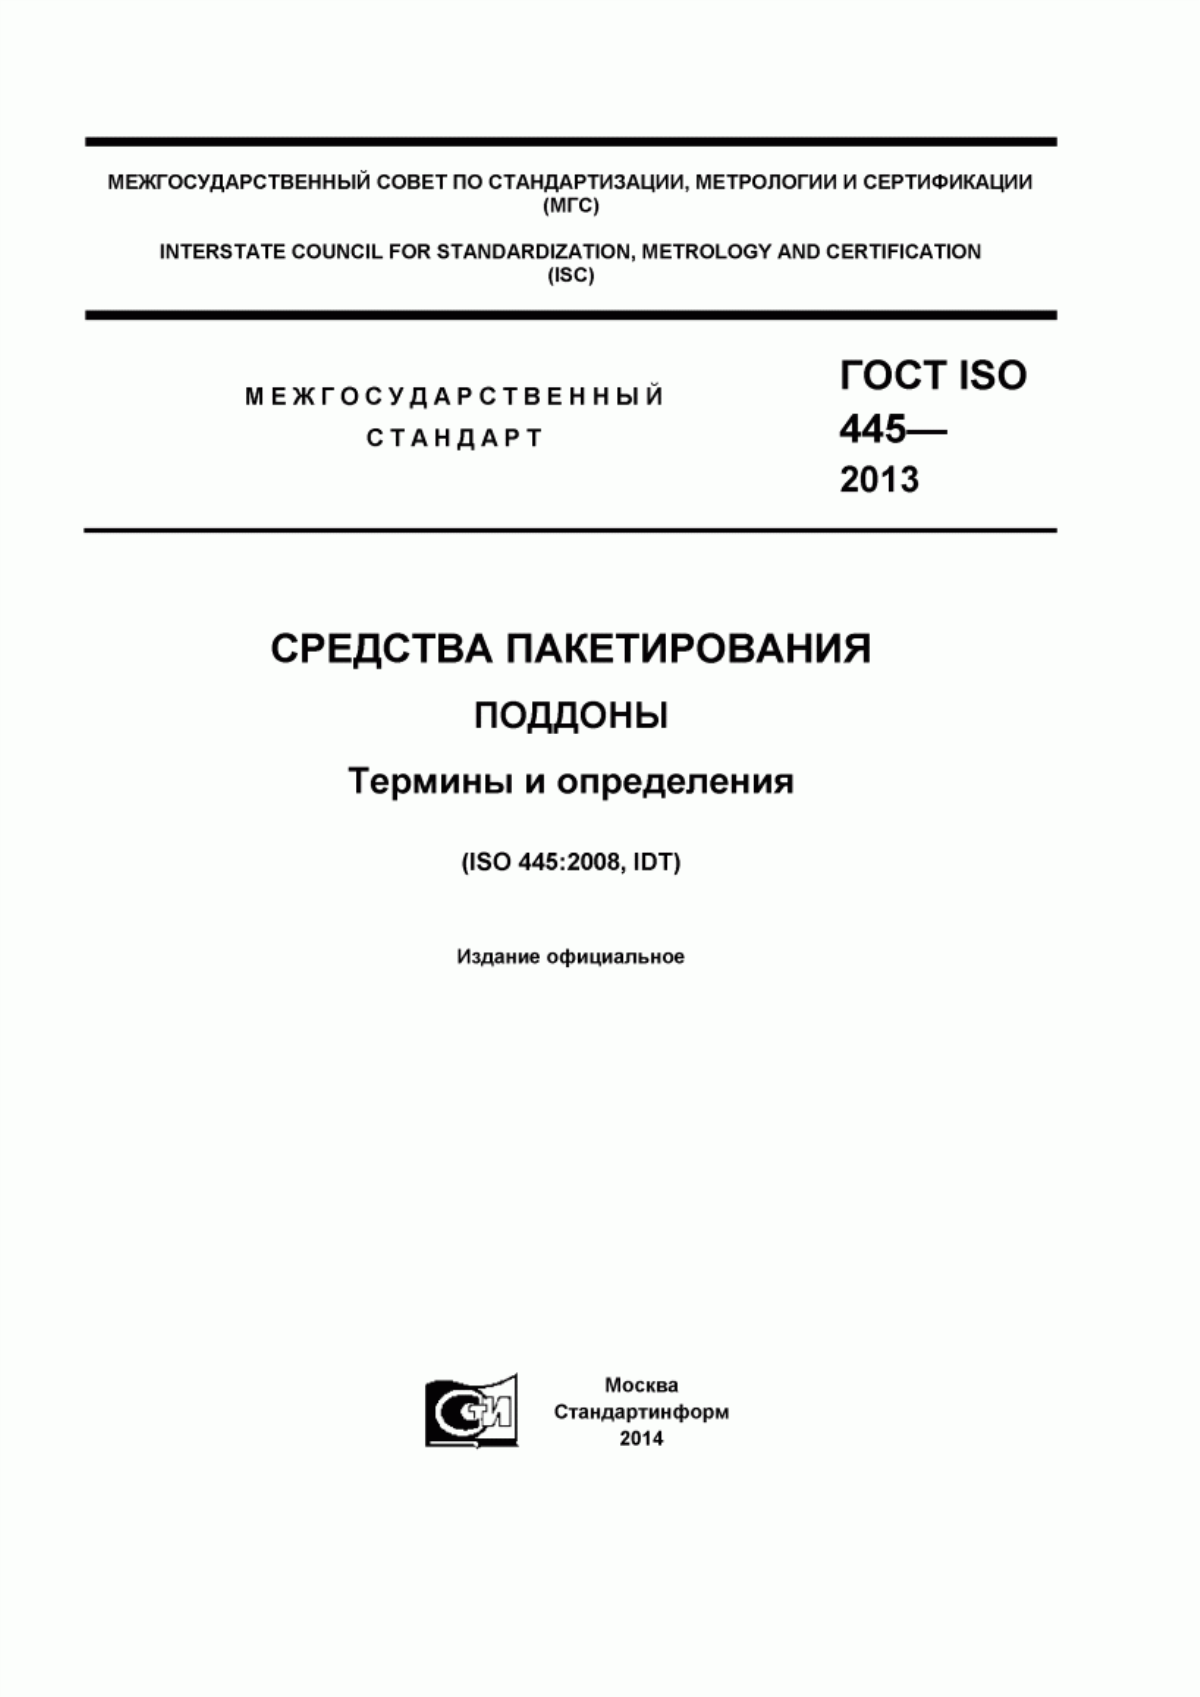 ГОСТ ISO 445-2013 Средства пакетирования. Поддоны. Термины и определения